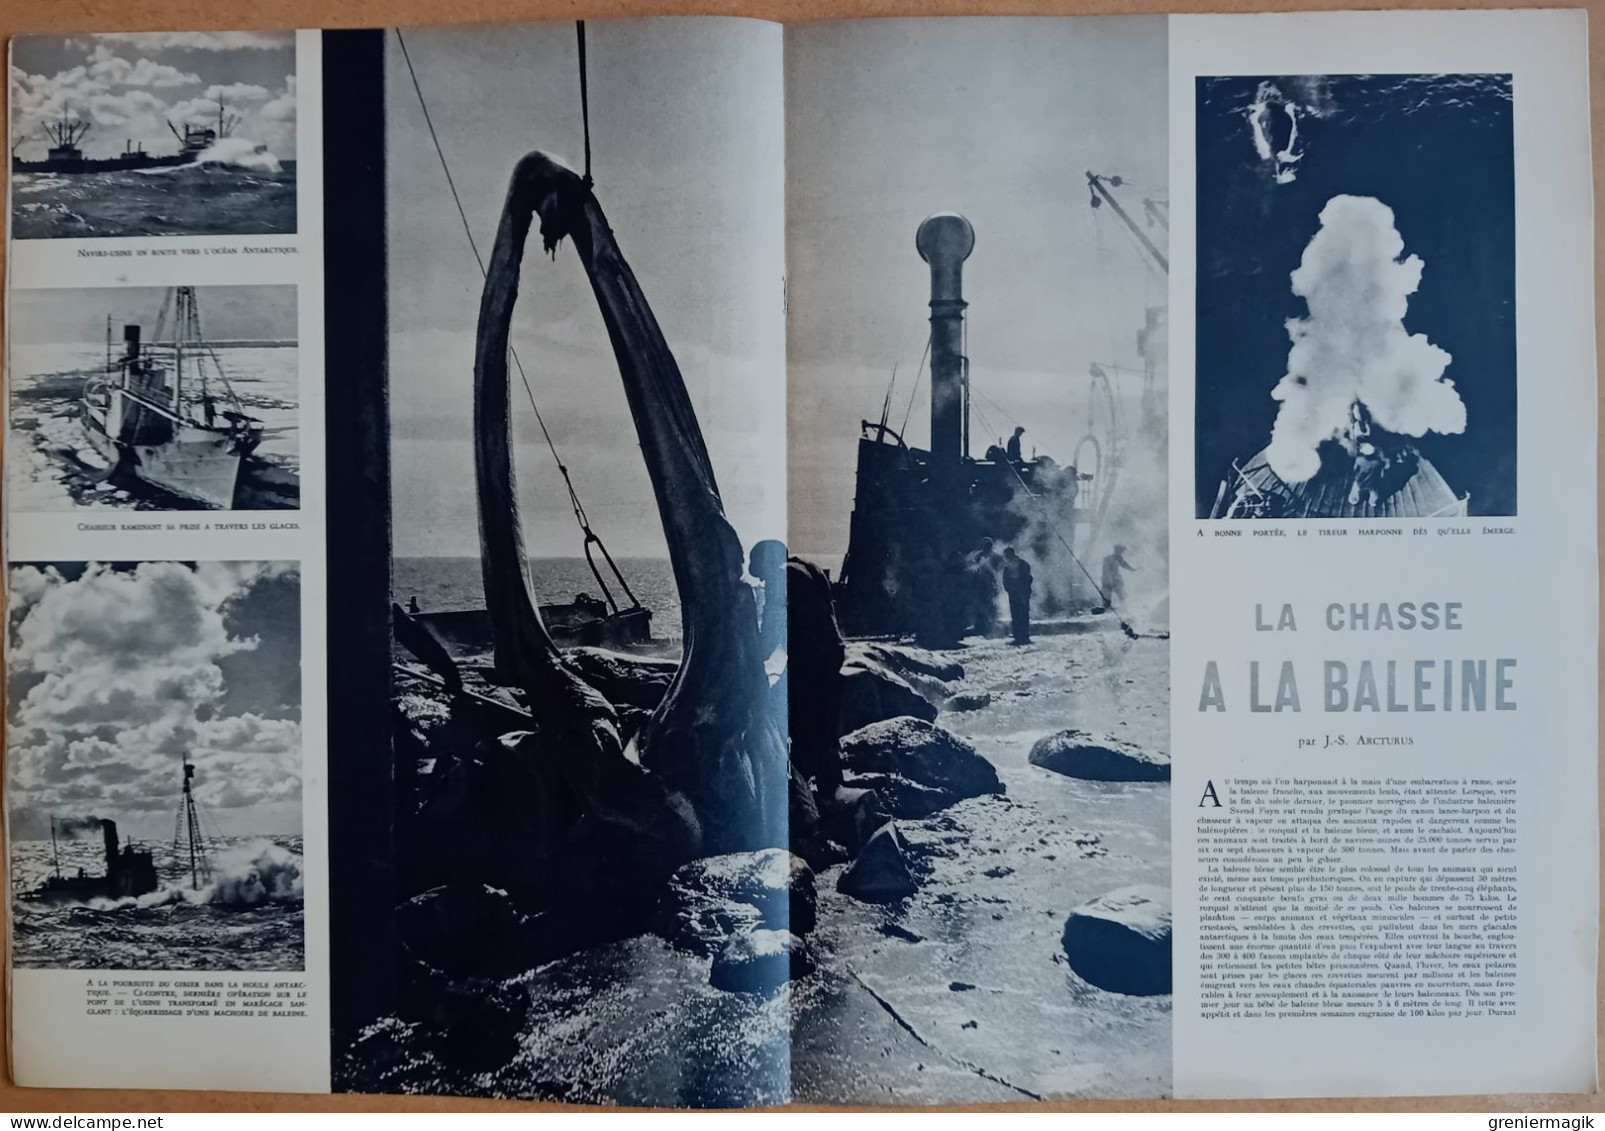 France Illustration N°202 27/08/1949 Nouvelles conventions de Genève/Portmeirion/Chasse à la baleine/Equateur/Salzbourg